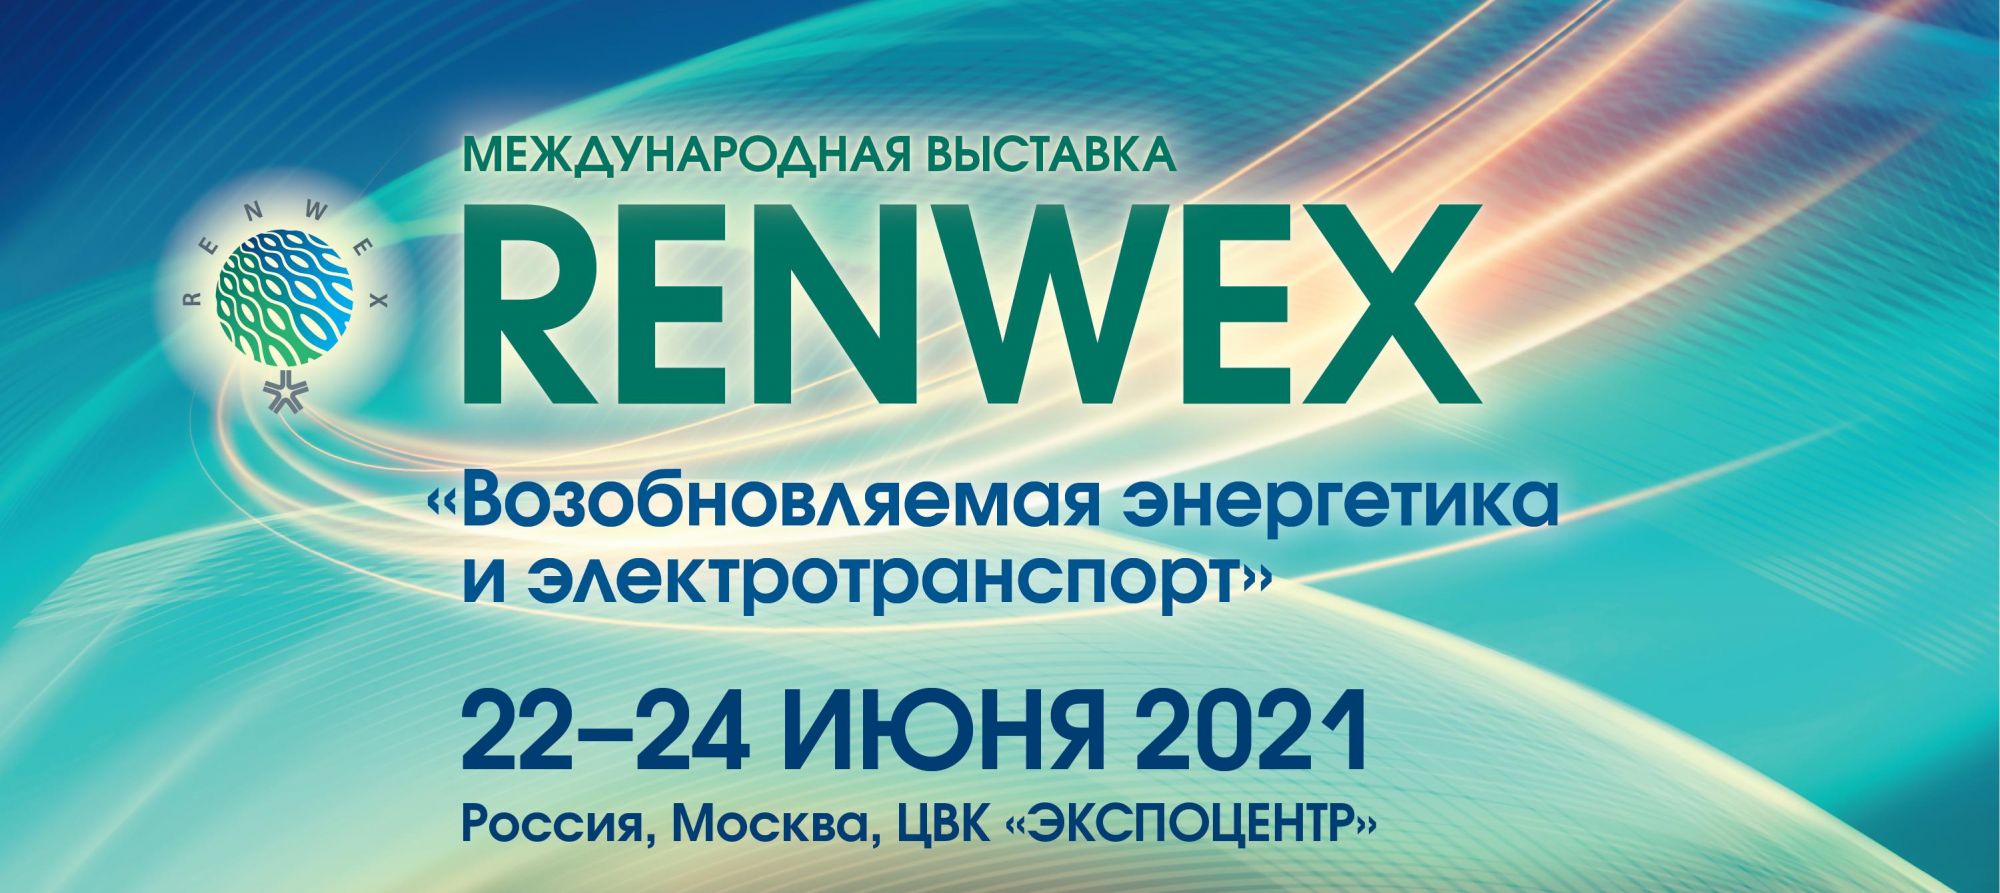 С 22 по 24 июня 2021года на территории ЦВК «Экспоцентр»  в Москве пройдет международная выставка «RENWEX. Возобновляема энергетика для регионального развития»